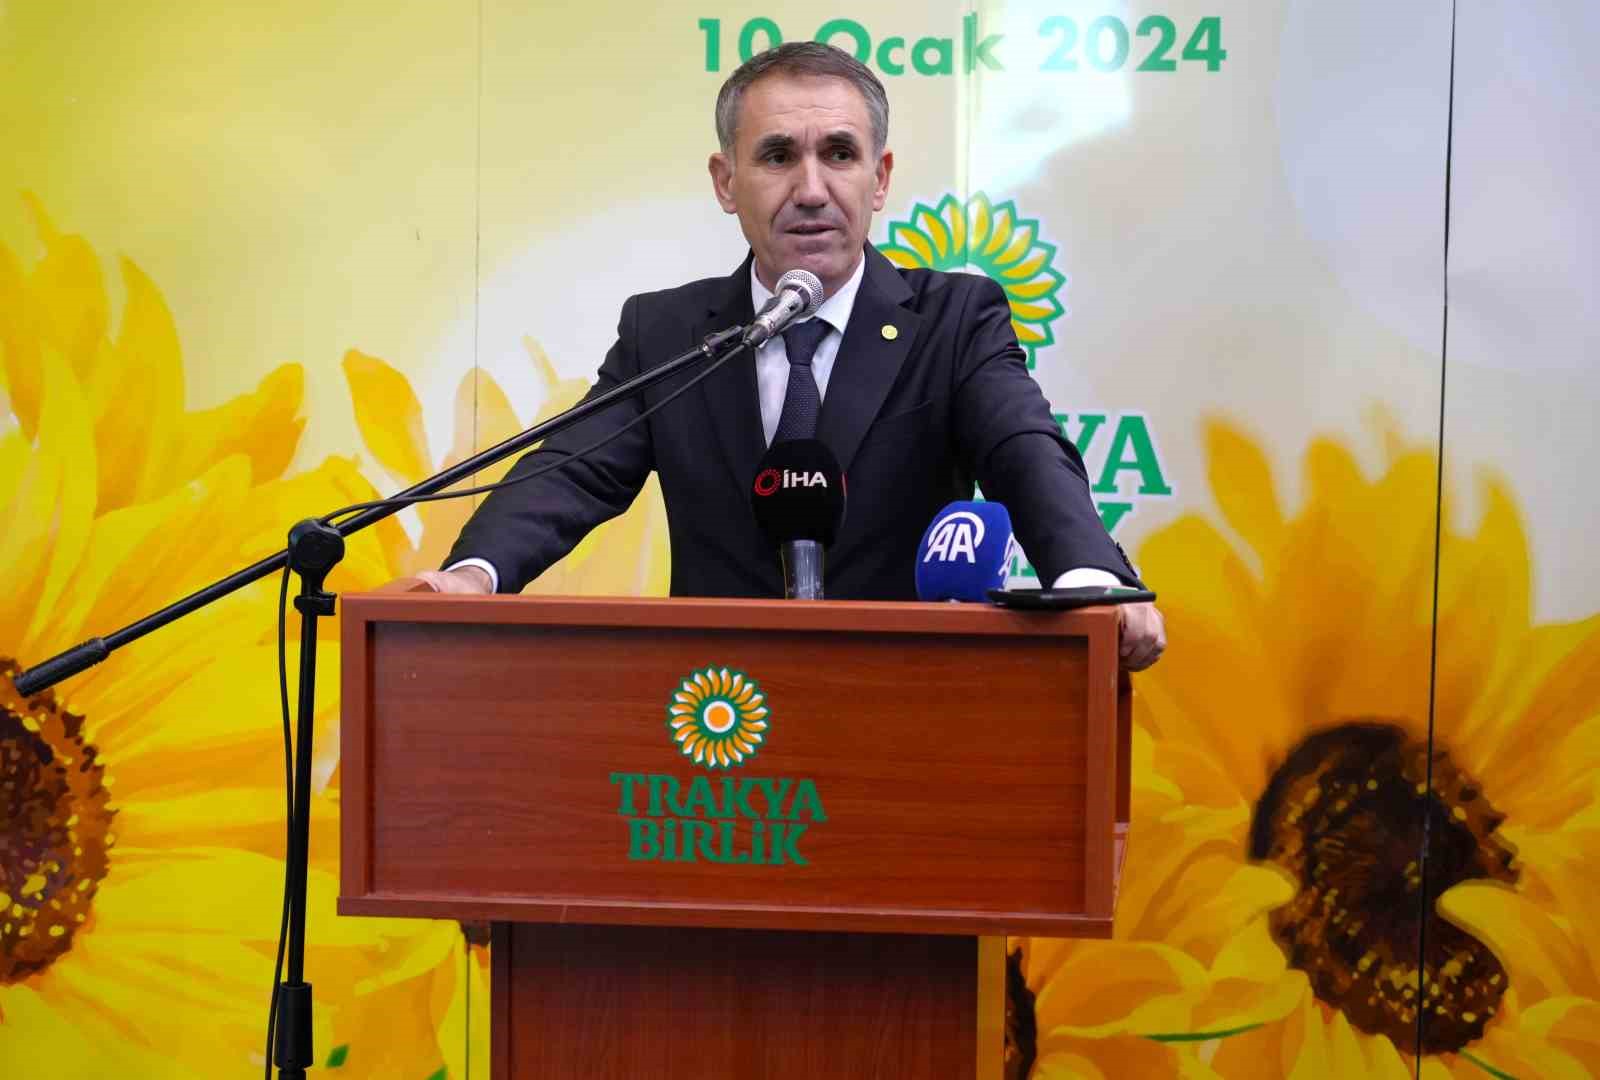 Trakya Birlik Başkanı Kırbiç: Kuraklık, Ayçiçek Verimini Olumsuz Yönde Etkilemiştir